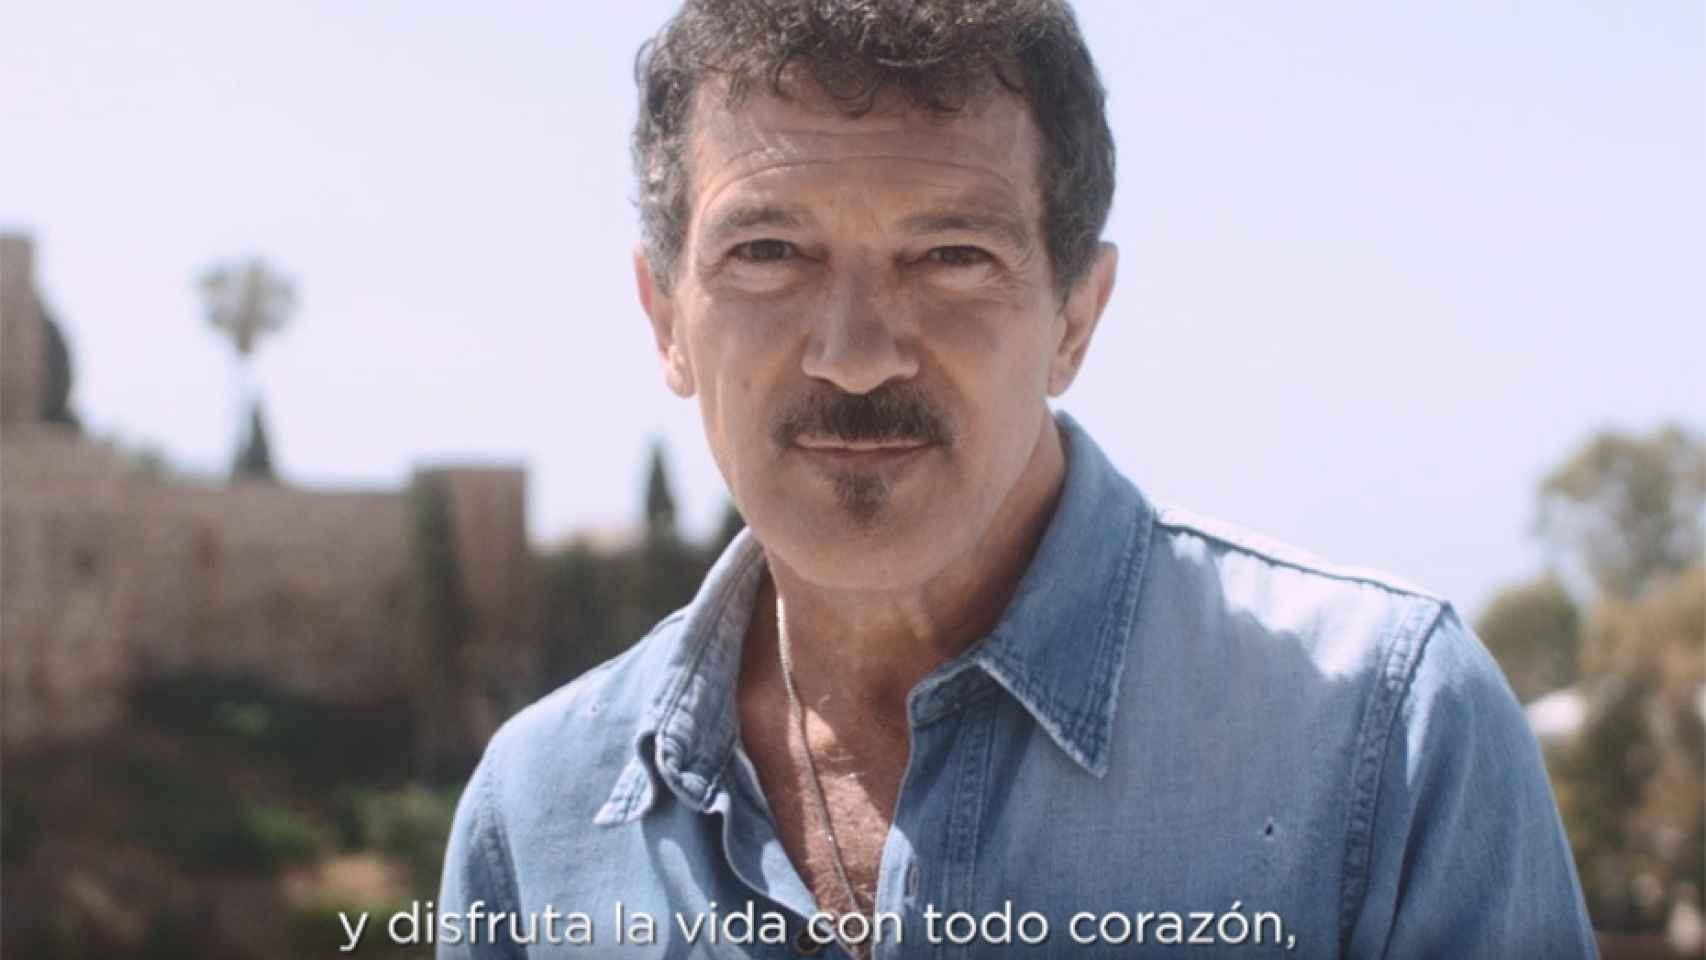 Captura del spot de la campaña de promoción de Andalucía con Antonio Banderas